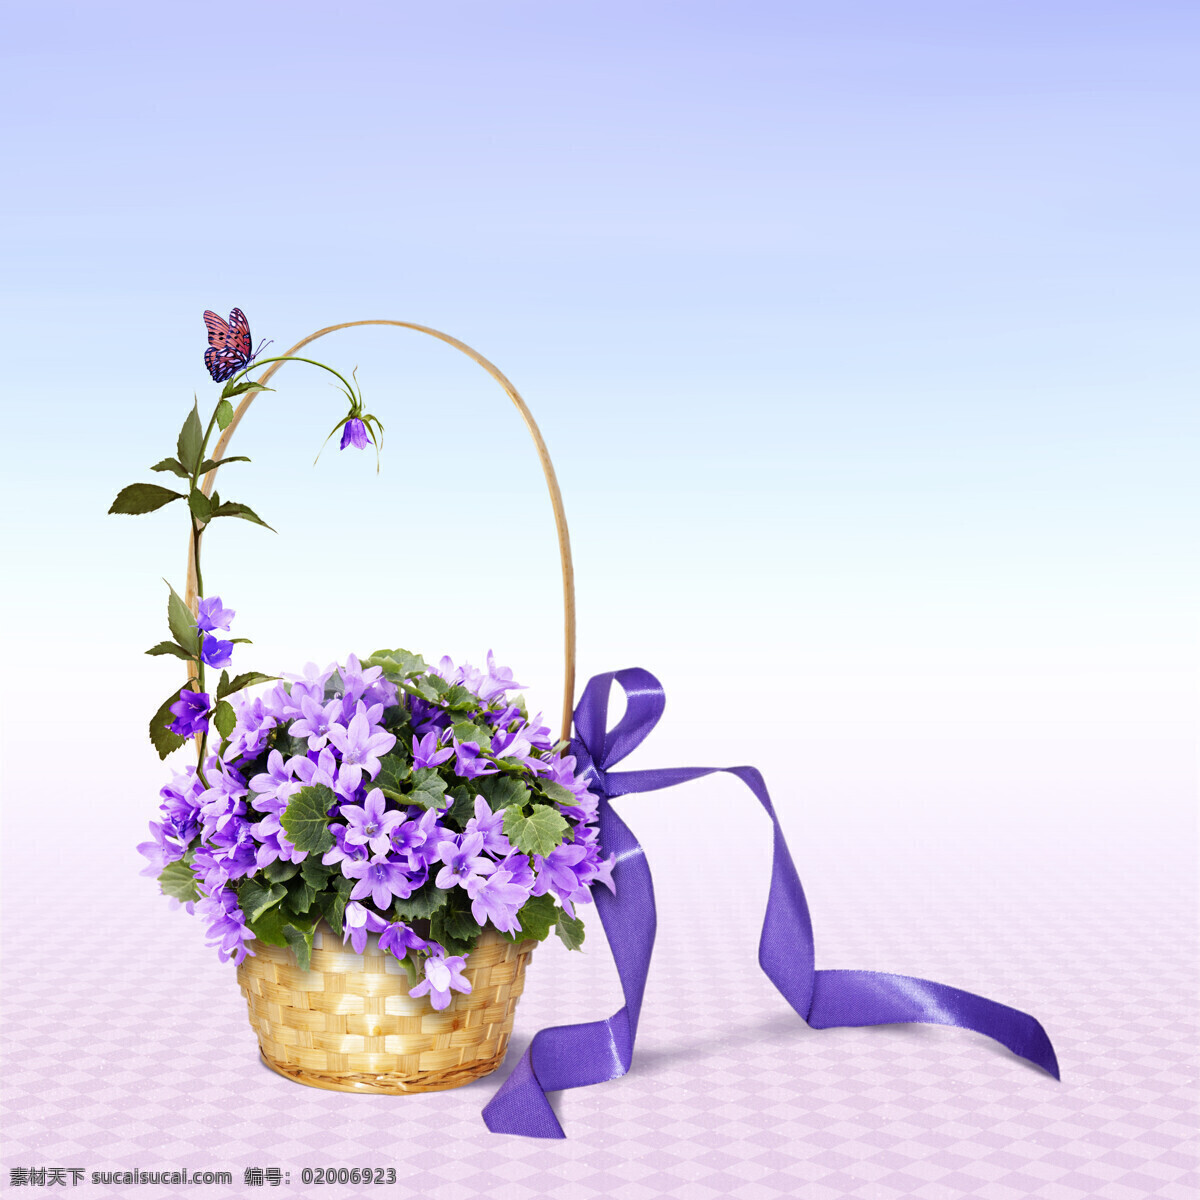 婚礼 花篮 花篮图片素材 鲜花图片 紫色花朵 花朵 鲜花 篮子